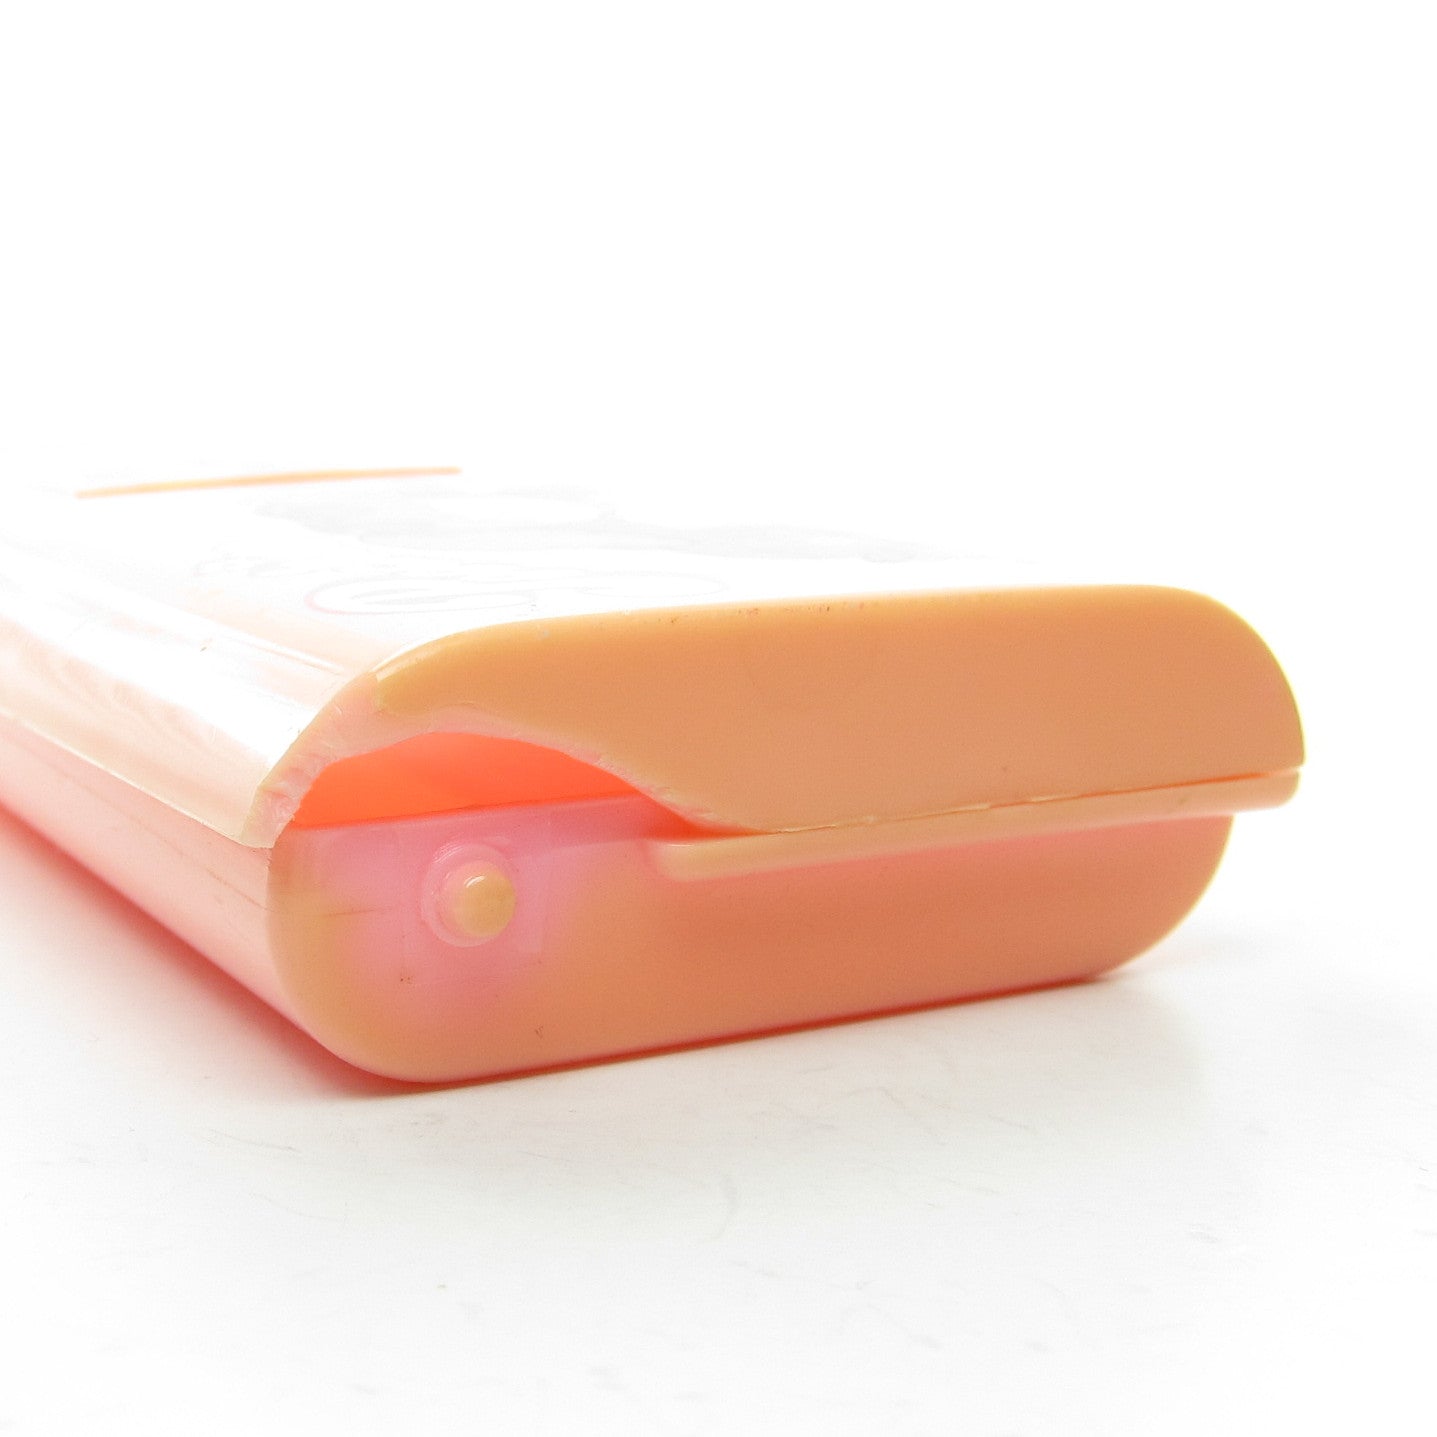 Poochie Designer Pencil Pack Case with Ruler, Eraser, Pencils